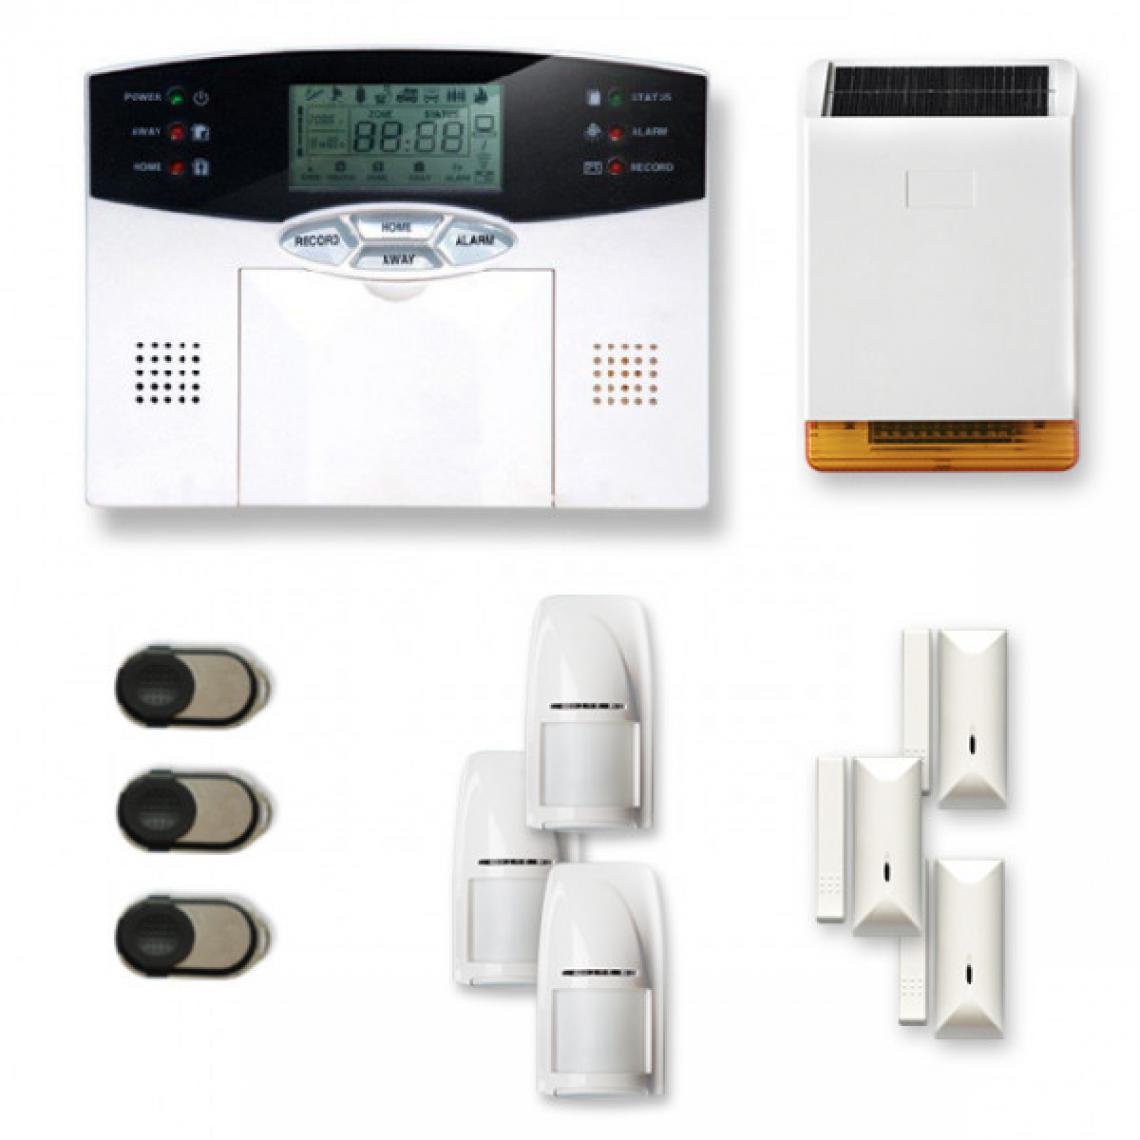 Tike Securite - Alarme maison sans fil MN17 Compatible Box internet - Alarme connectée